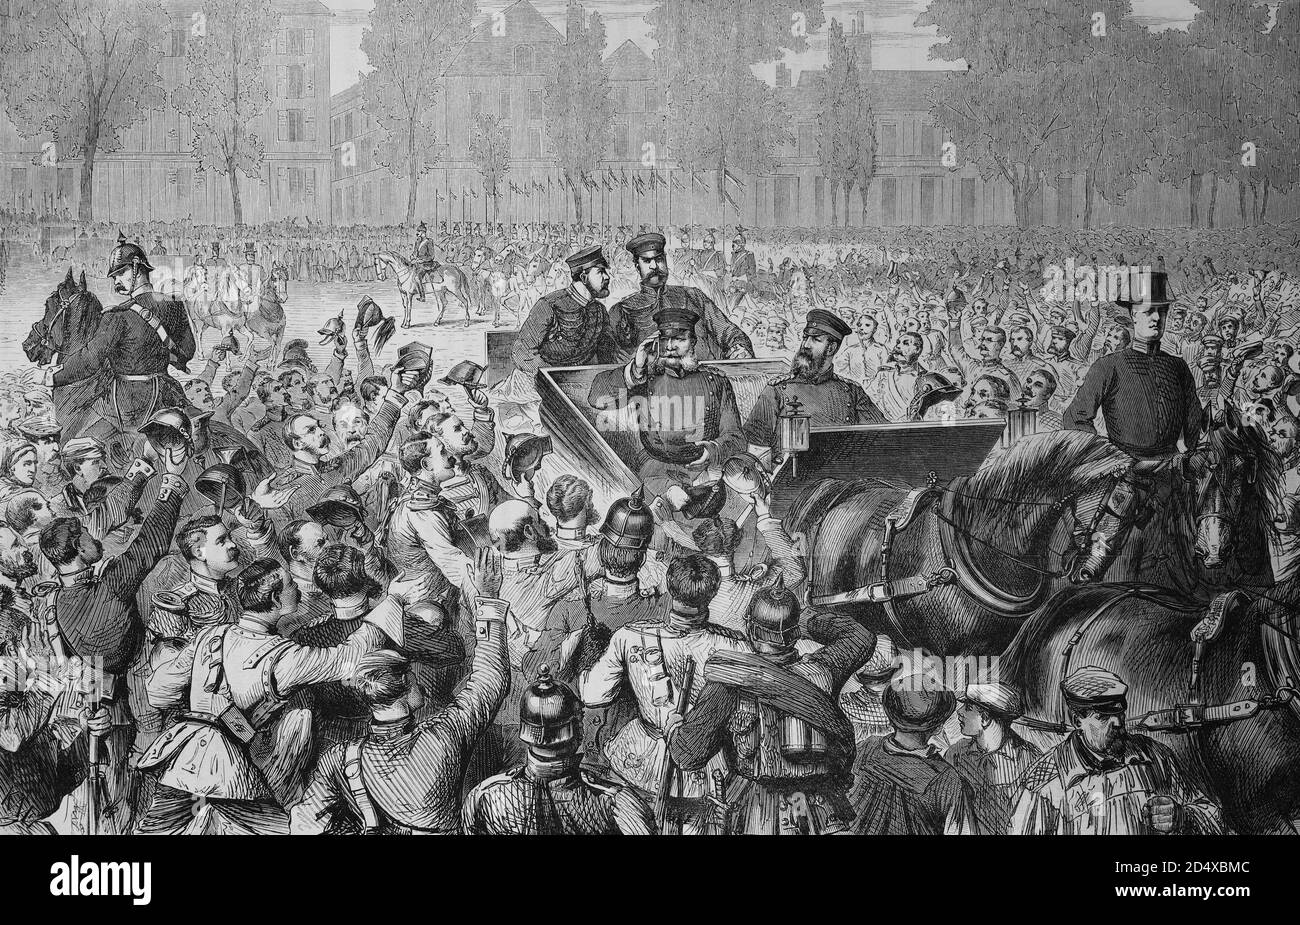 Ankunft von König Wilhelm I. von Preußen in Versailles, illustrierte Kriegsgeschichte, Deutsch - Französischer Krieg 1870-1871 Stockfoto